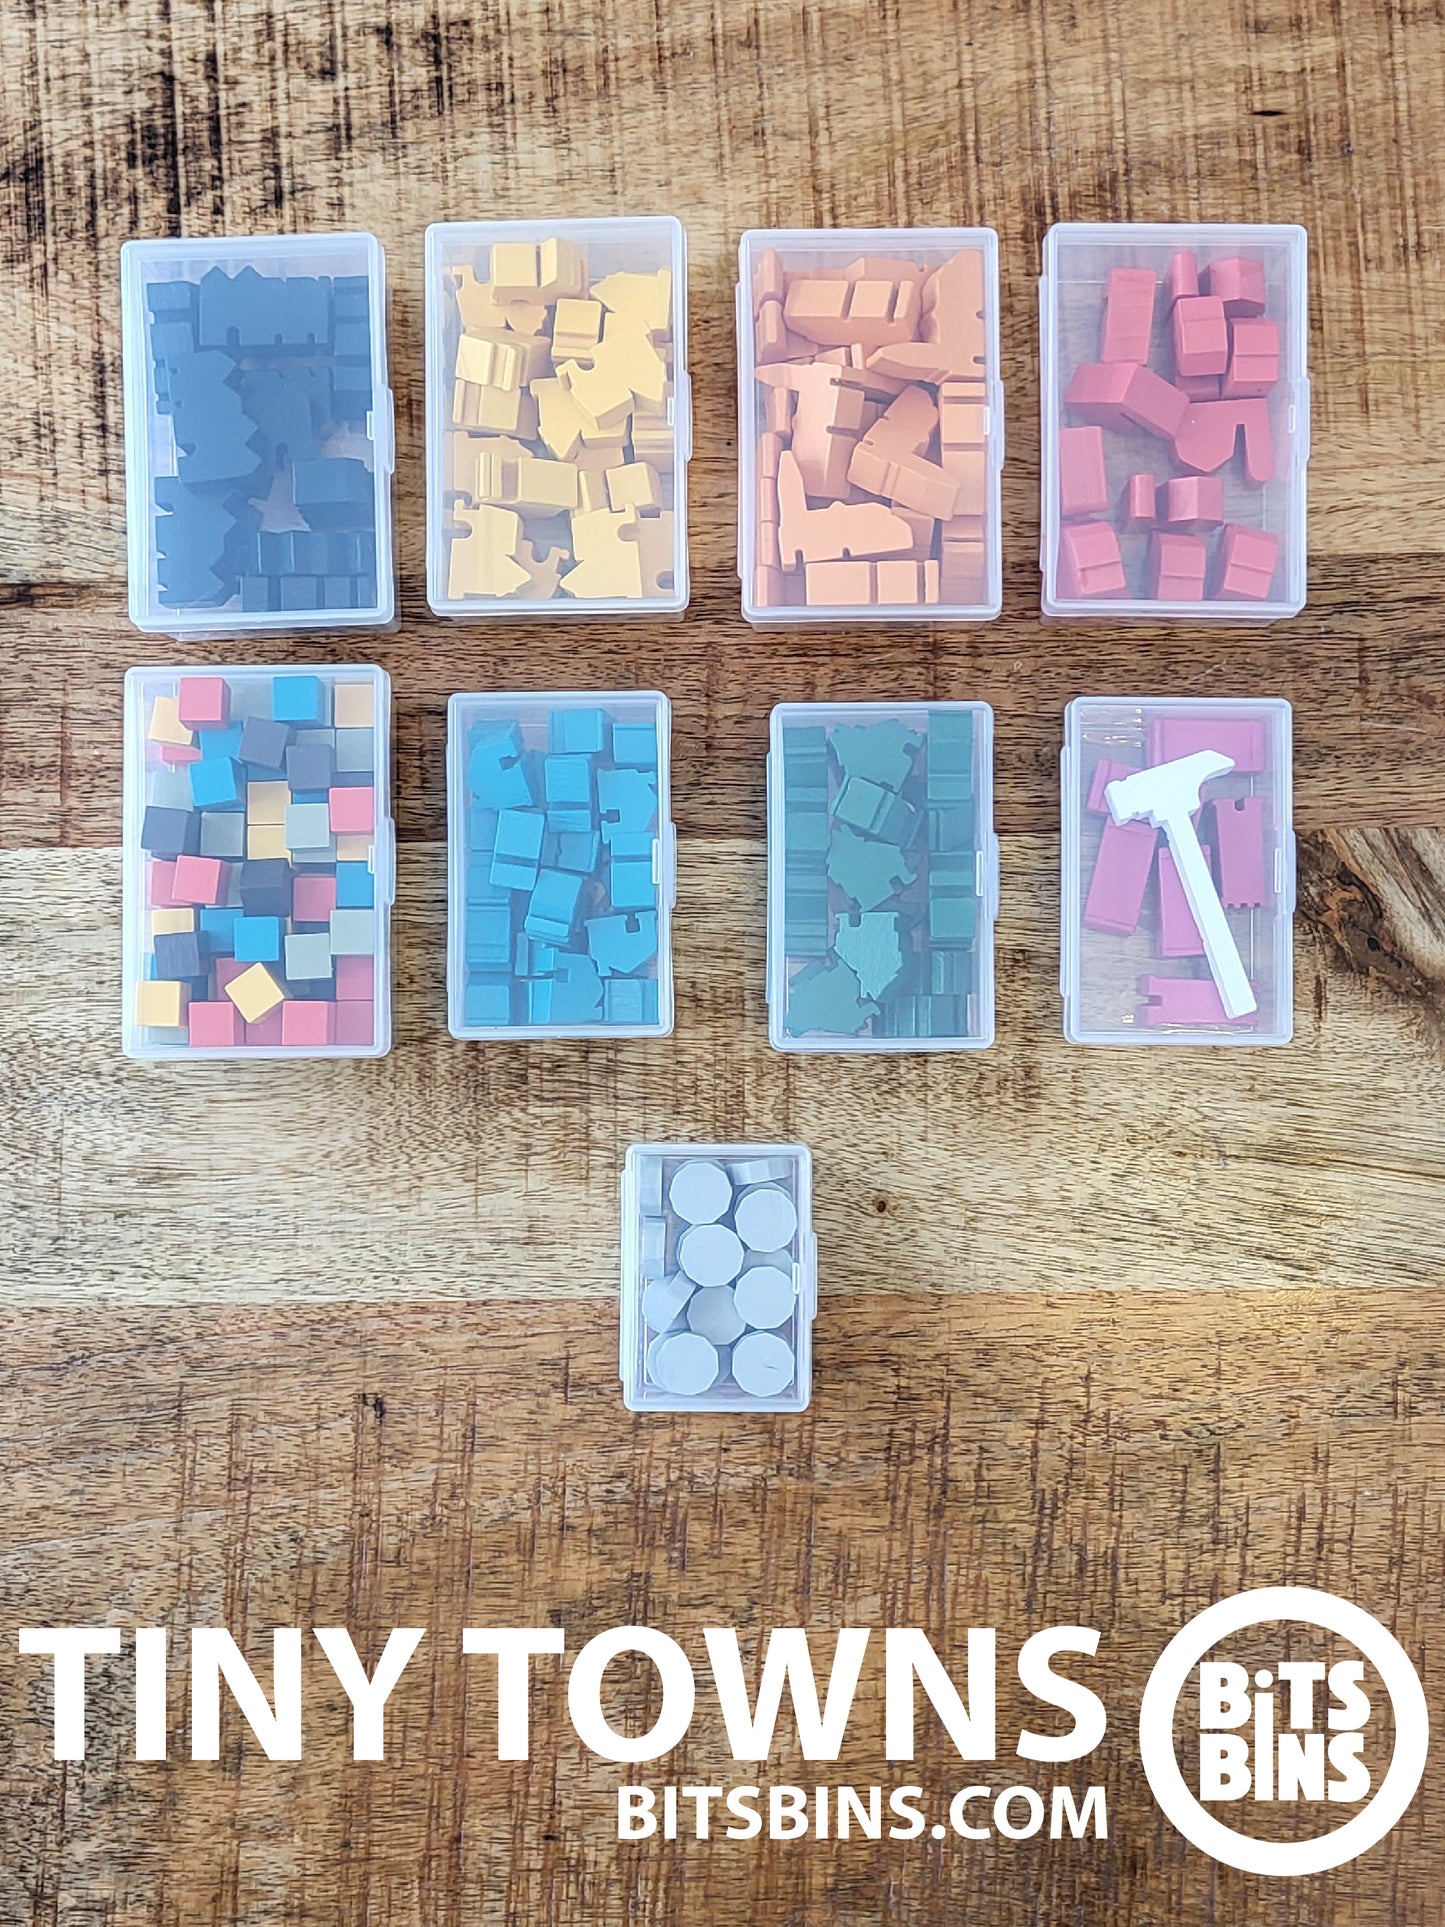 RECOMMENDED Tiny Towns BitsBins - 1 Mini, 3 Originals, 5 XLs